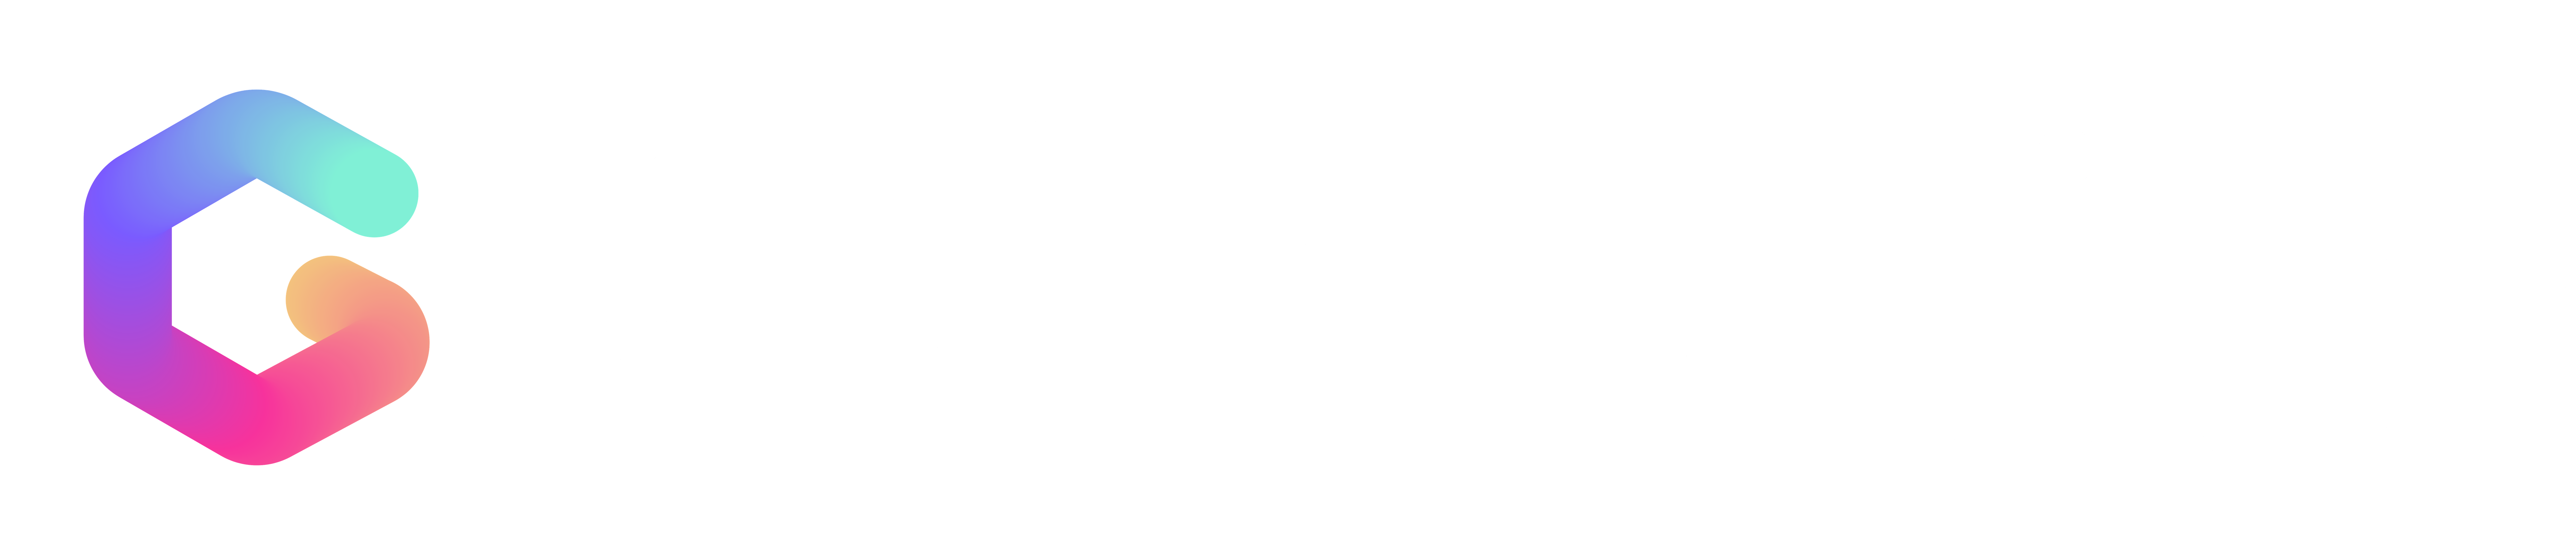 glasshive logo